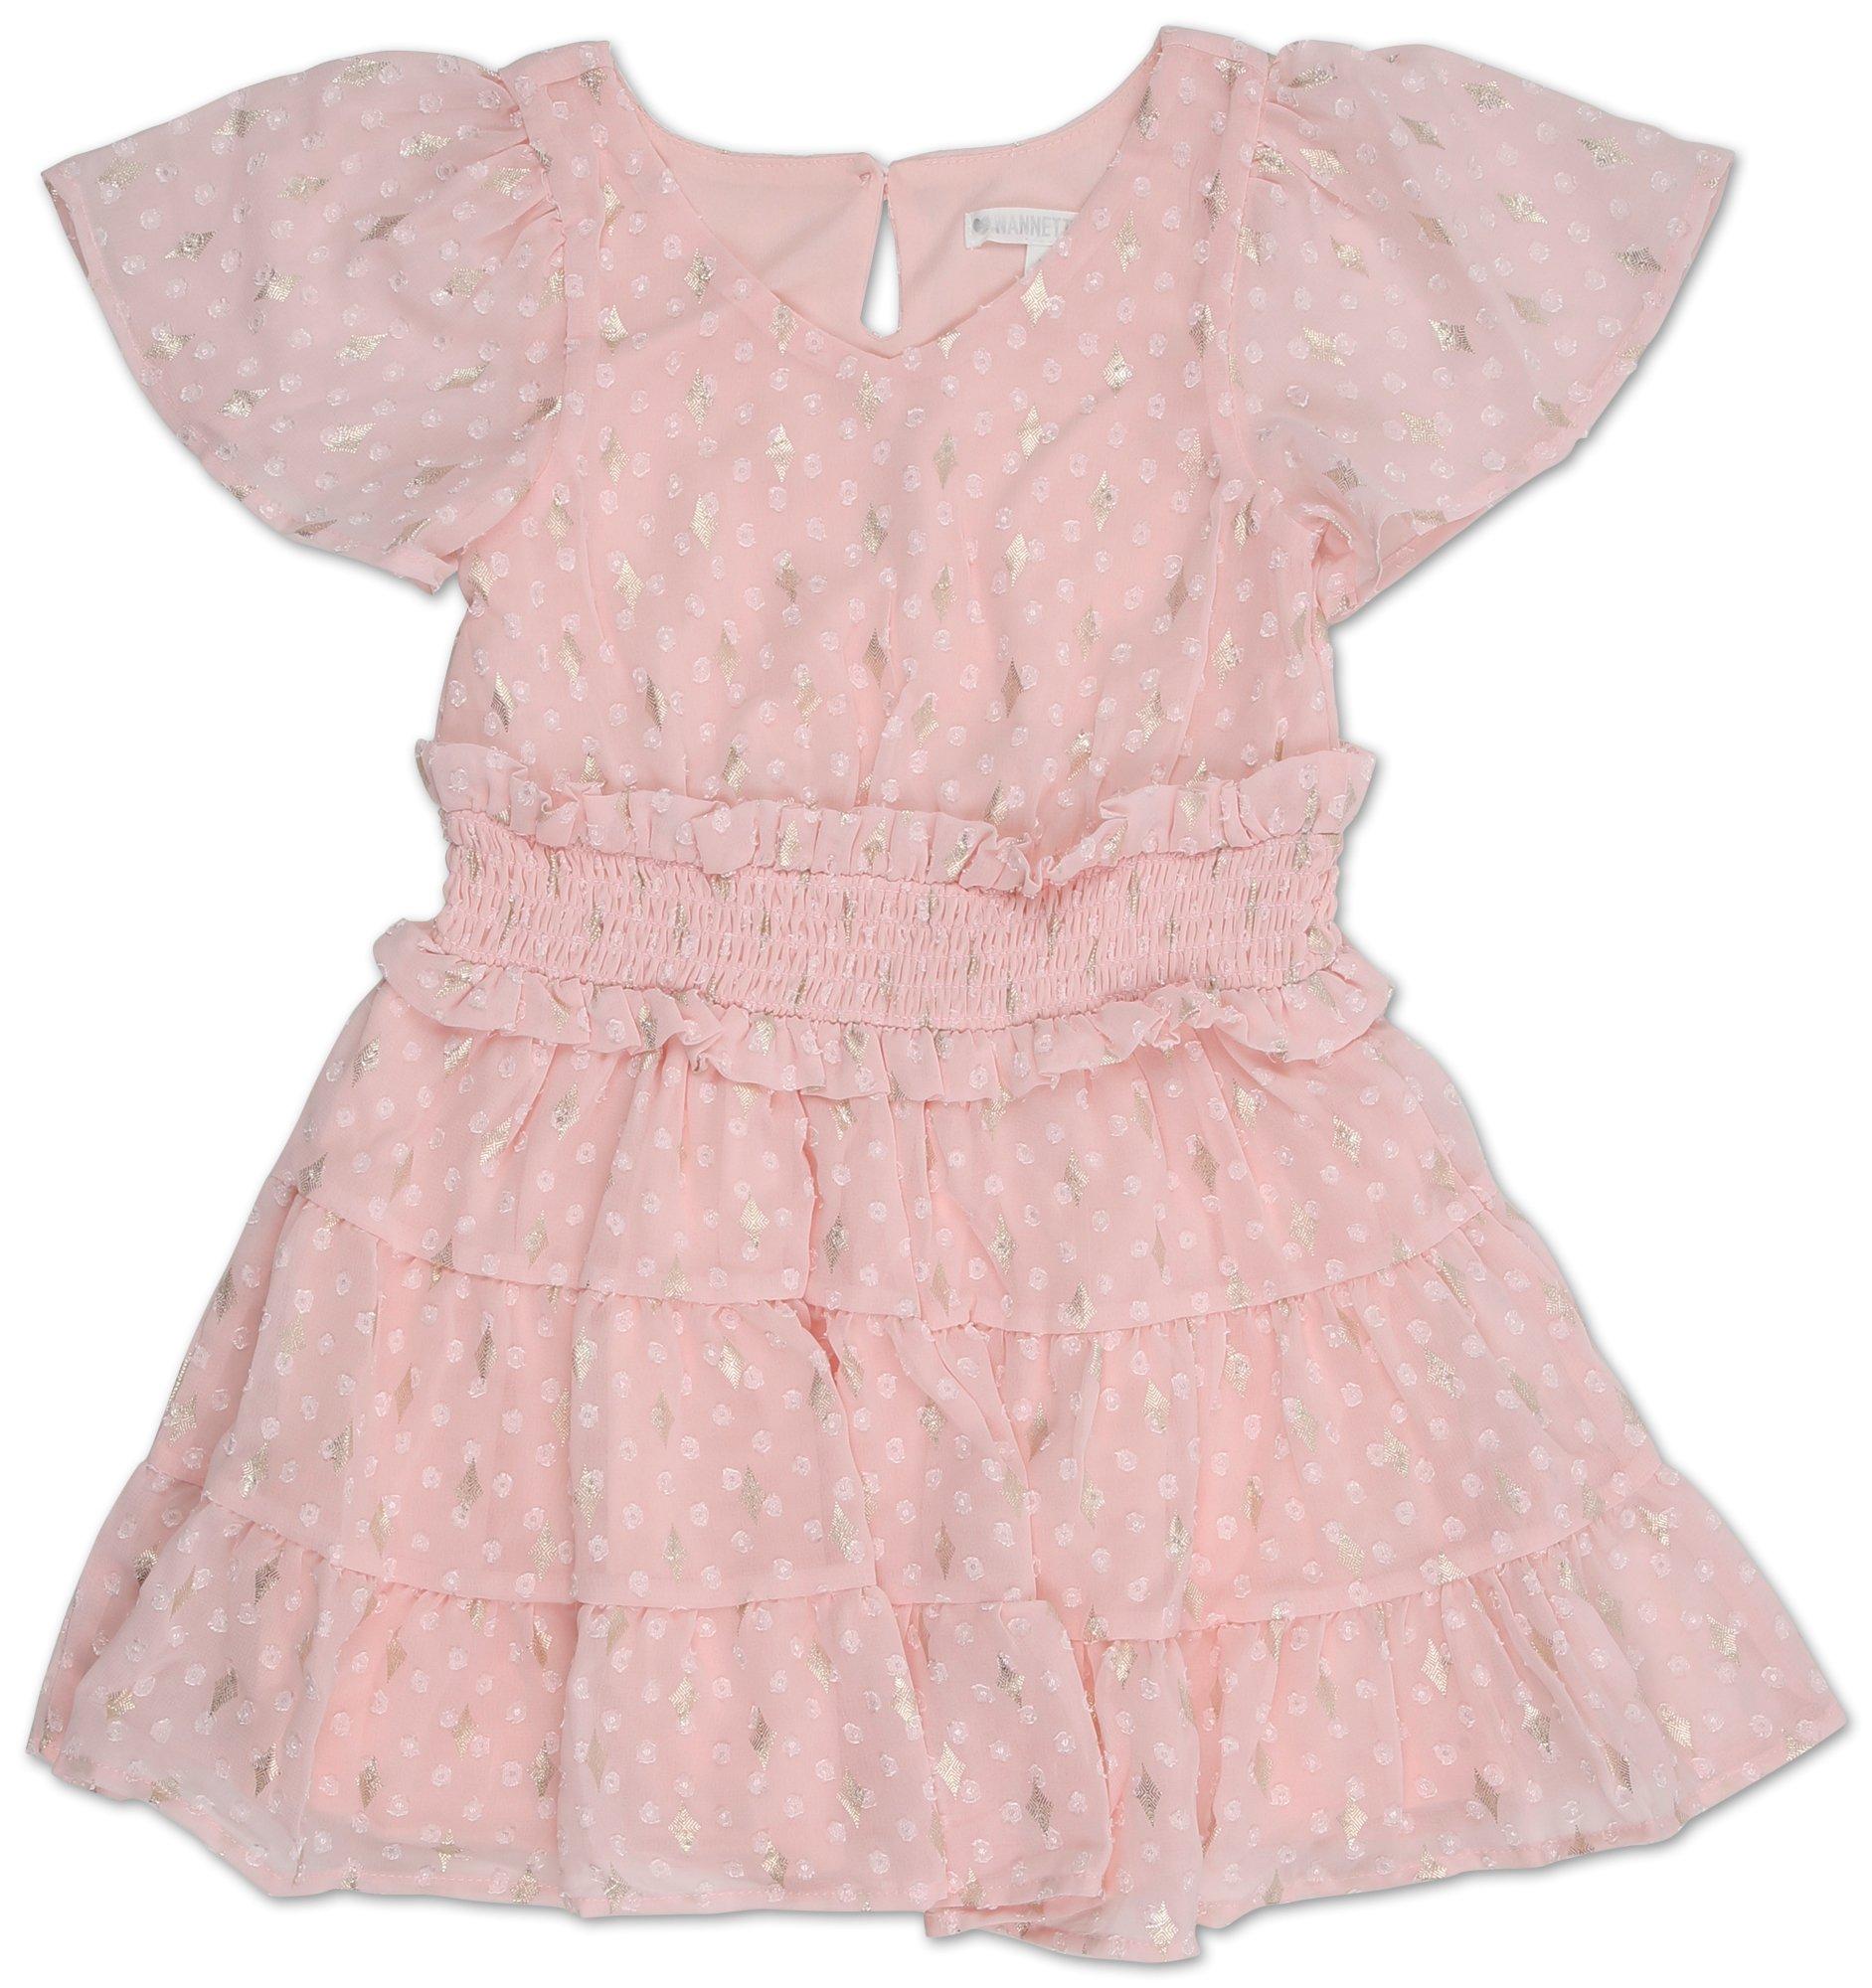 Toddler Girls Clip Dot Ruffle Dress